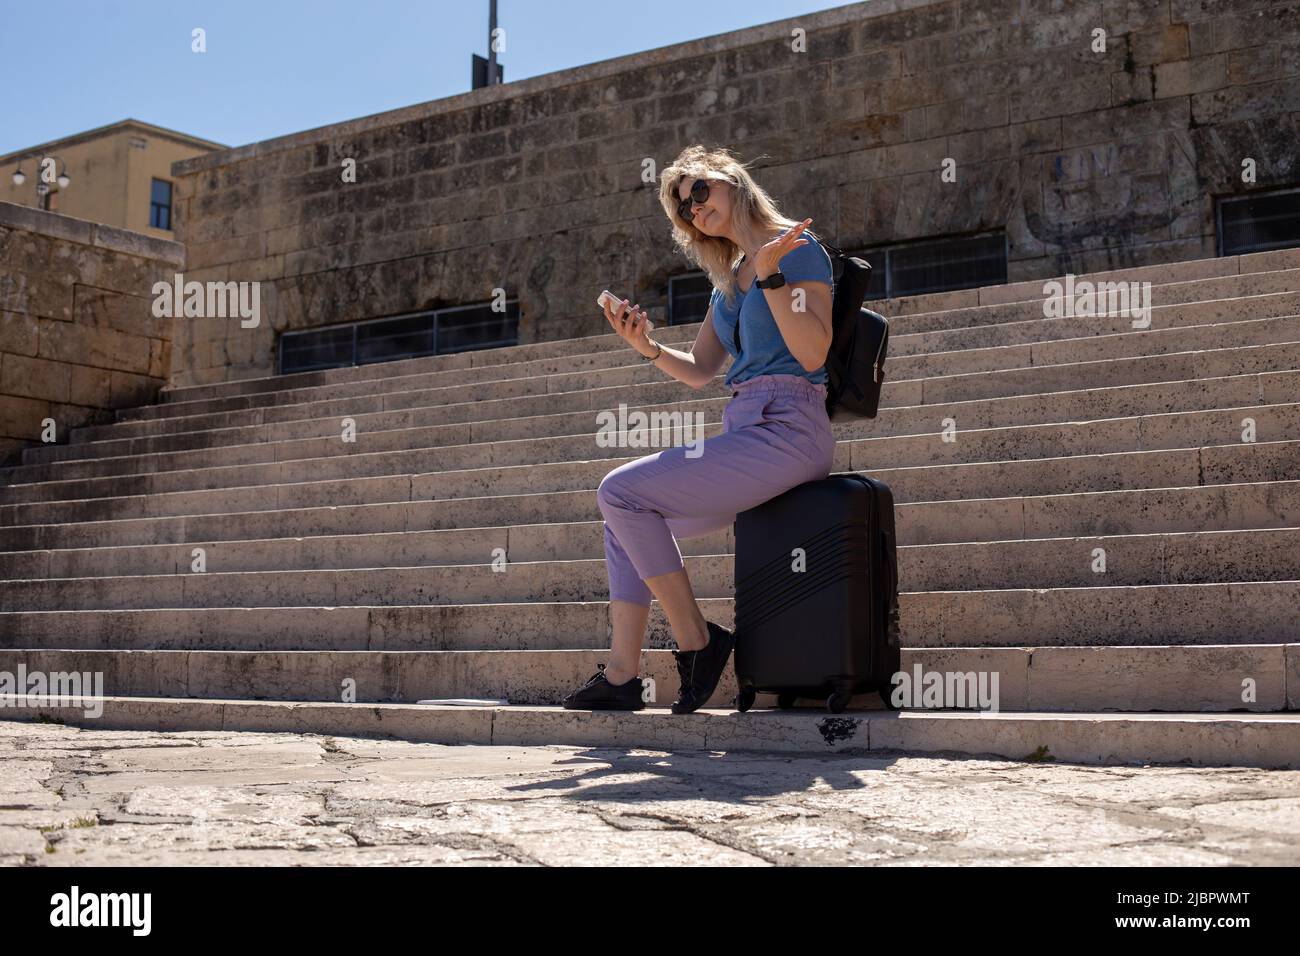 Jeune femme souriante assise sur une valise noire près des escaliers en béton de l'ancien bâtiment, tenant un smartphone, faisant des gestes. Banque D'Images